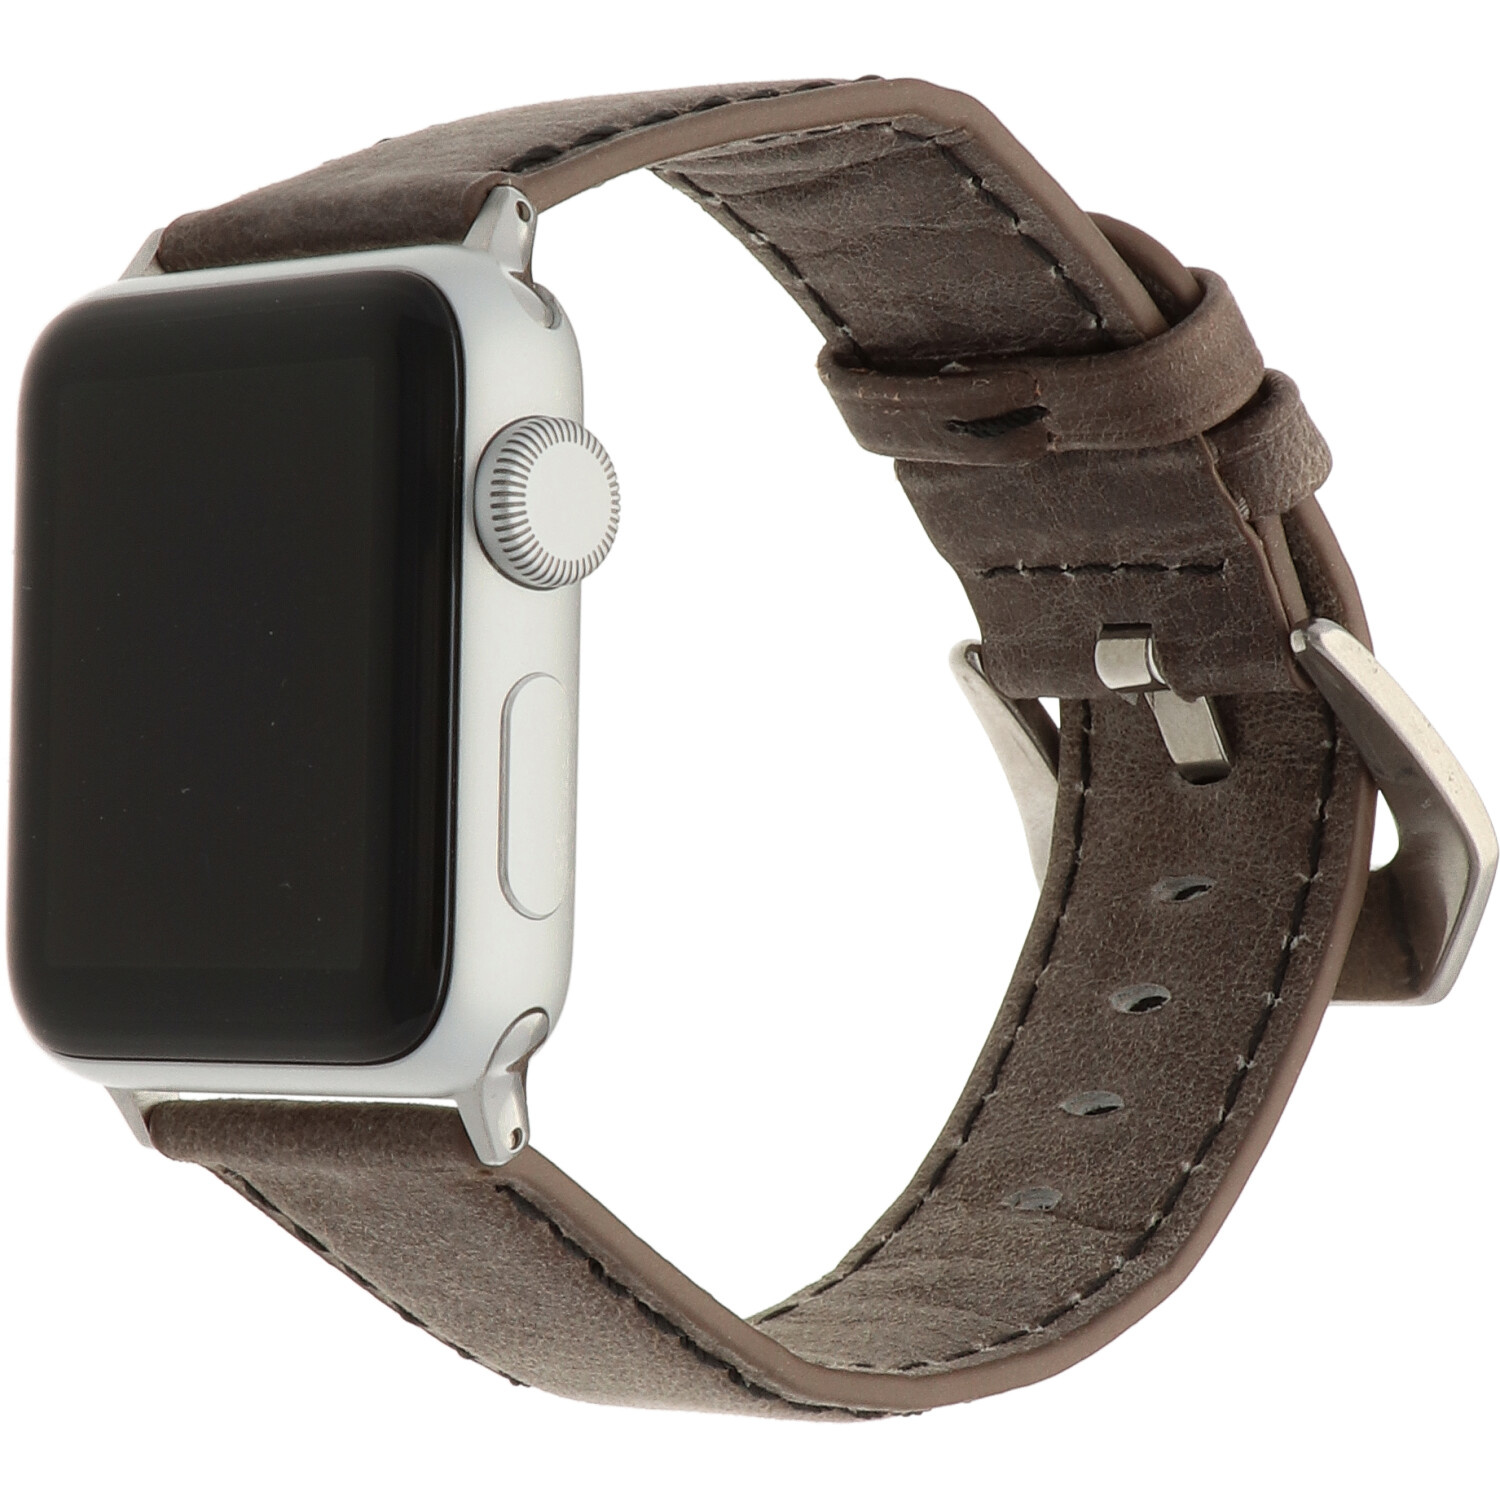 Apple Watch Leather Retro Strap - Dark Brown